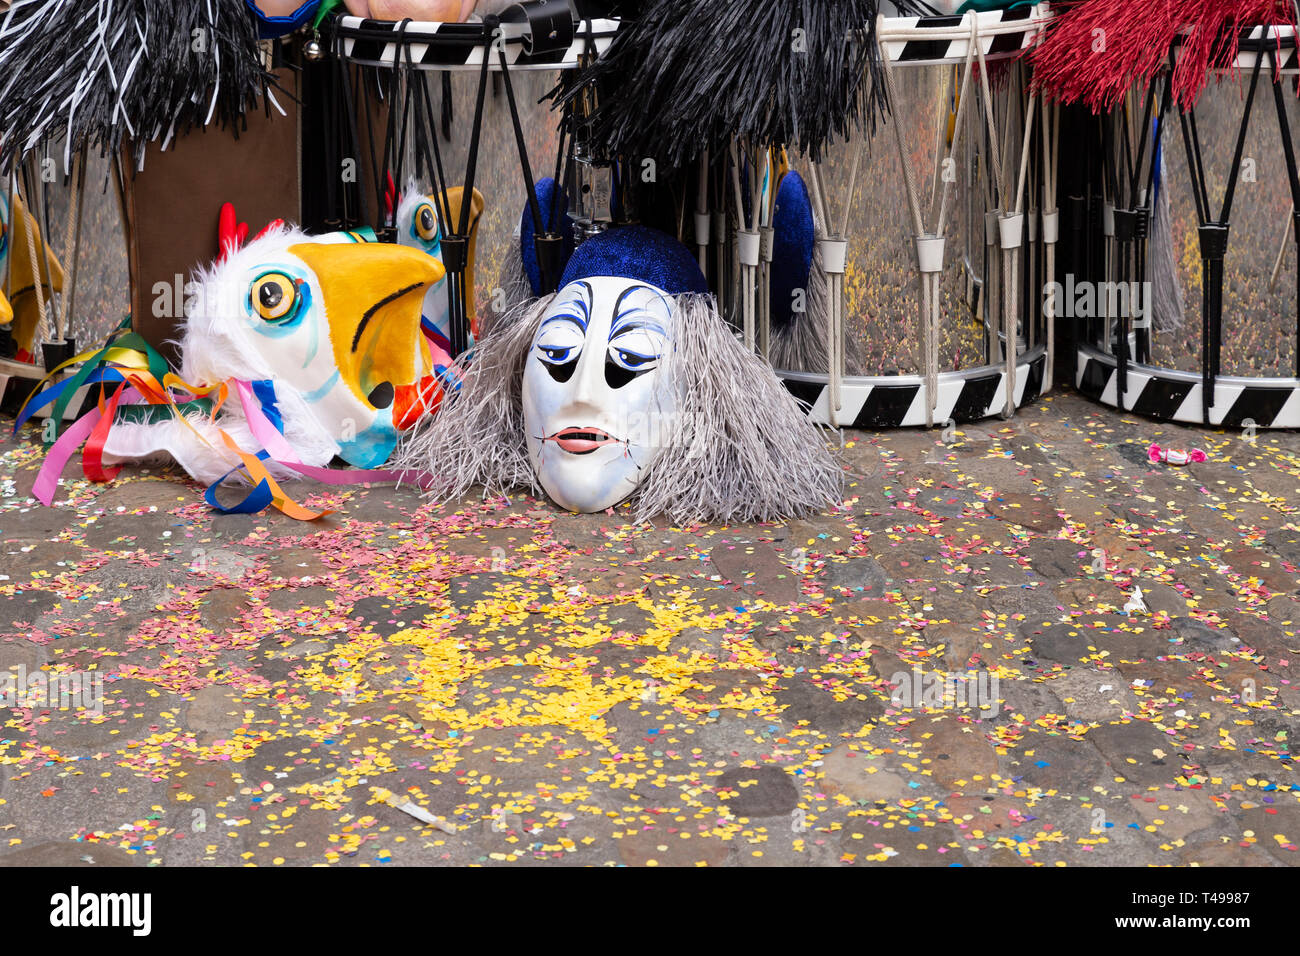 Augustinergasse, Bâle, Suisse - Mars 12th, 2019. Les masques de carnaval et les caisses claires entassés dans un coin de rue Banque D'Images